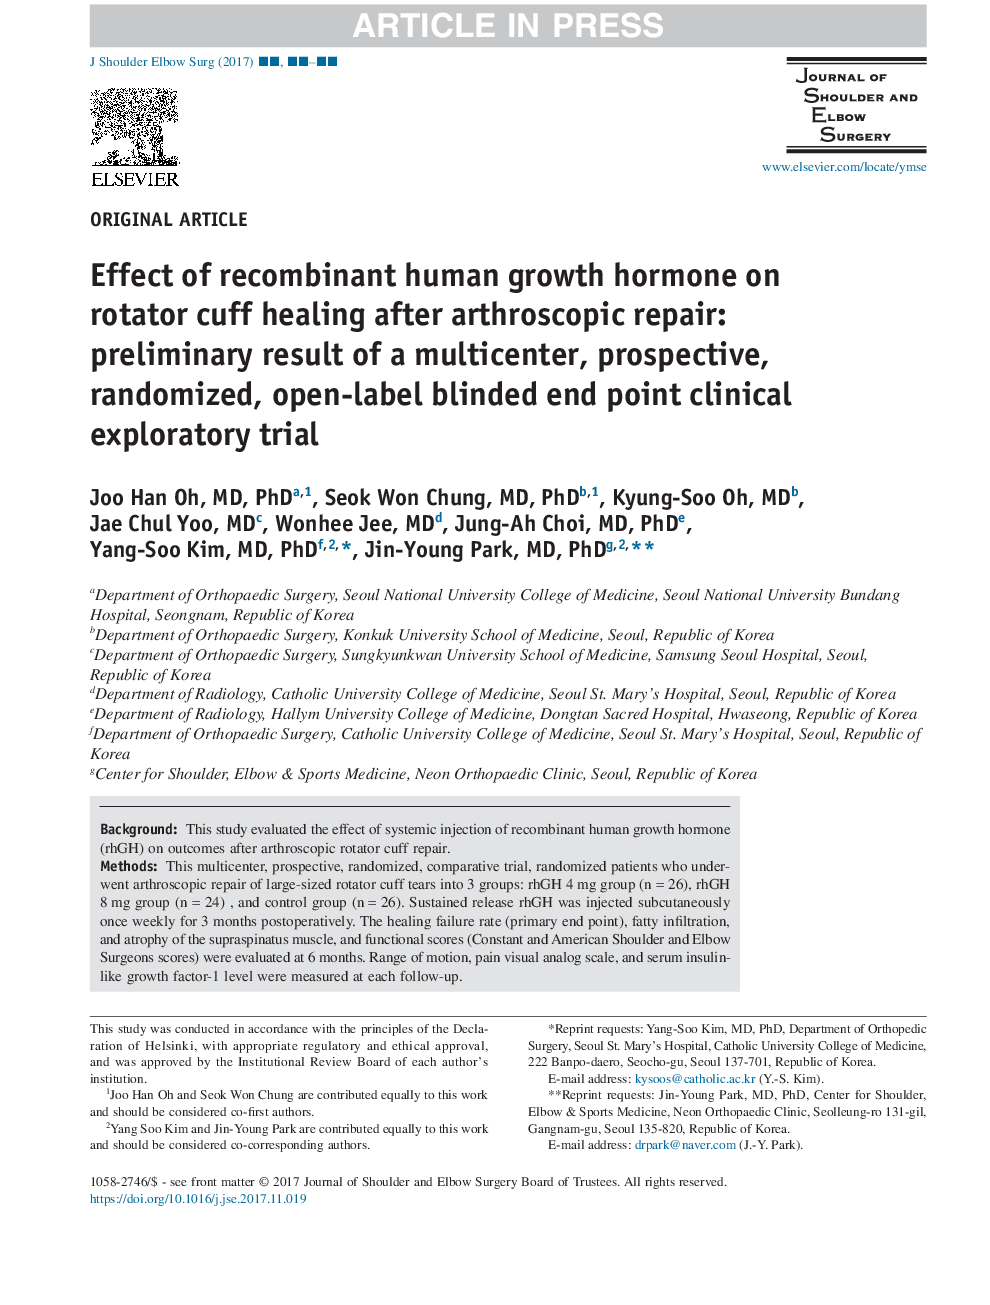 اثر هورمون رشد نوترکیب انسان بر بهبود روتاتور کاف پس از ترمیم آرتروسکوپیک: نتیجه اولیه آزمایش بالینی چند مرحلهای، آینده نگر، تصادفی و باز 